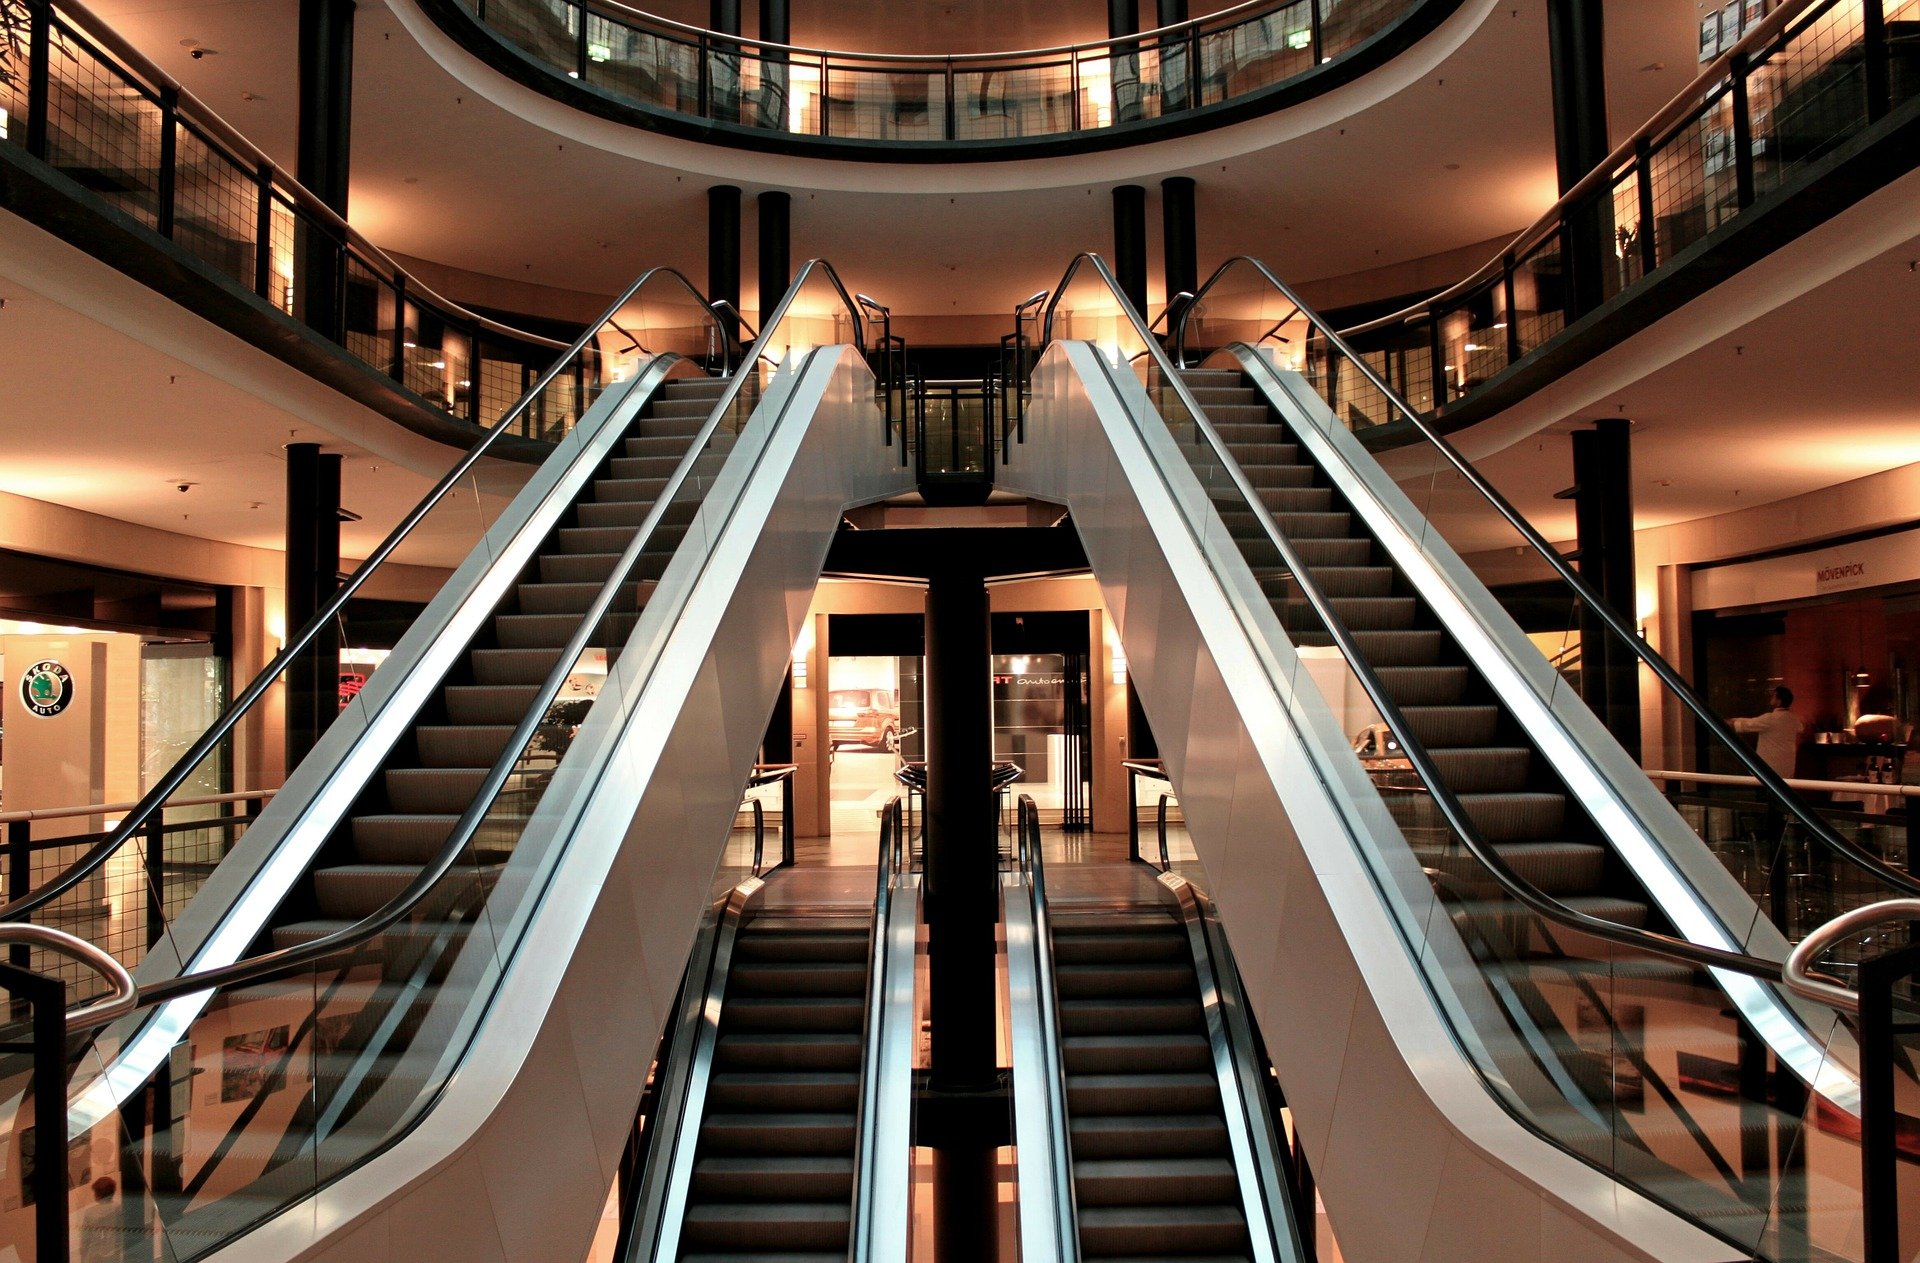 Escalator in shopping center